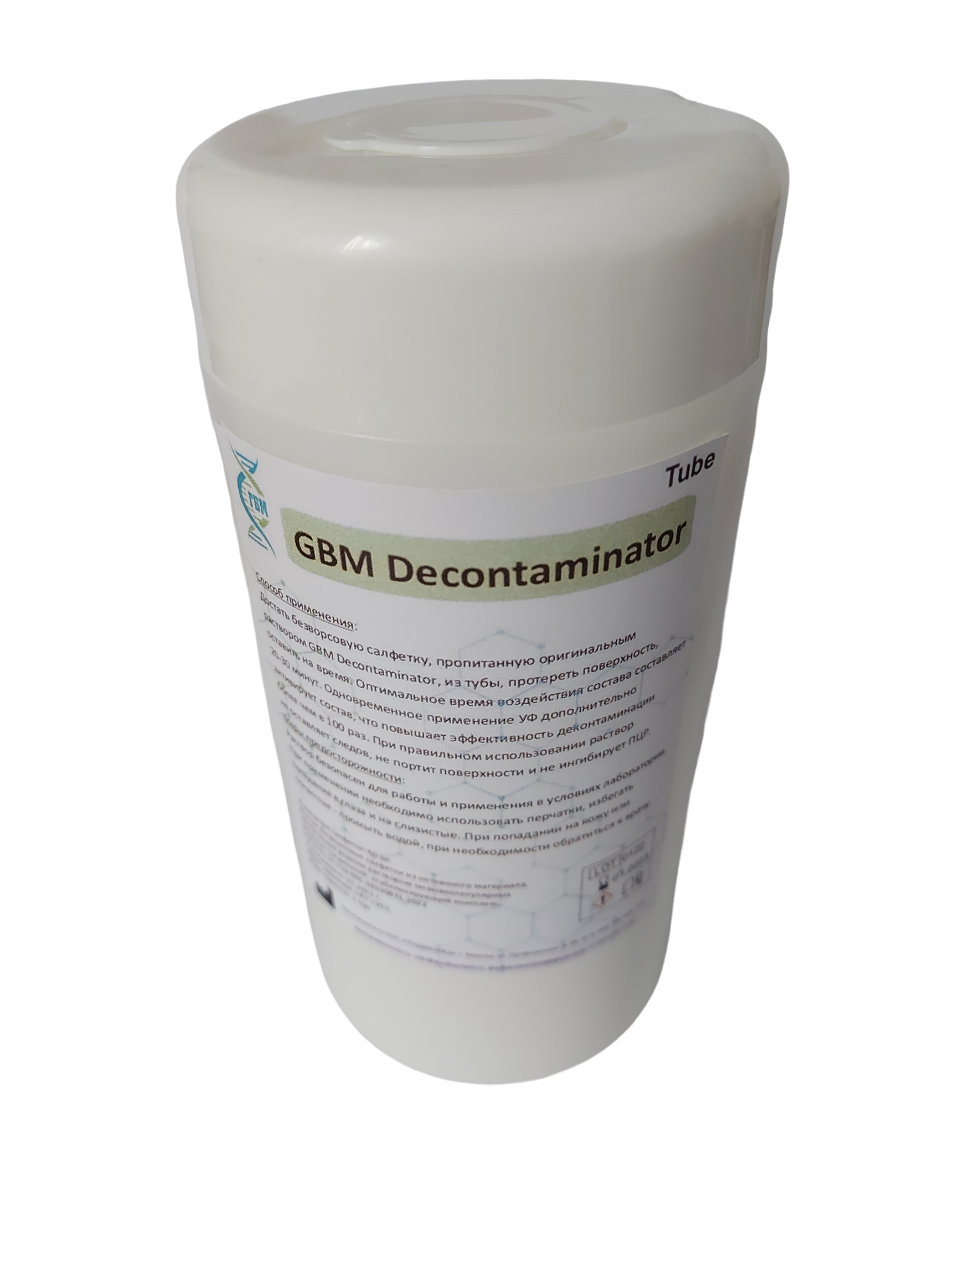 Салфетки GRADBIOMED® для глубокой очистки поверхностей<br>GBM Decontaminator Tube